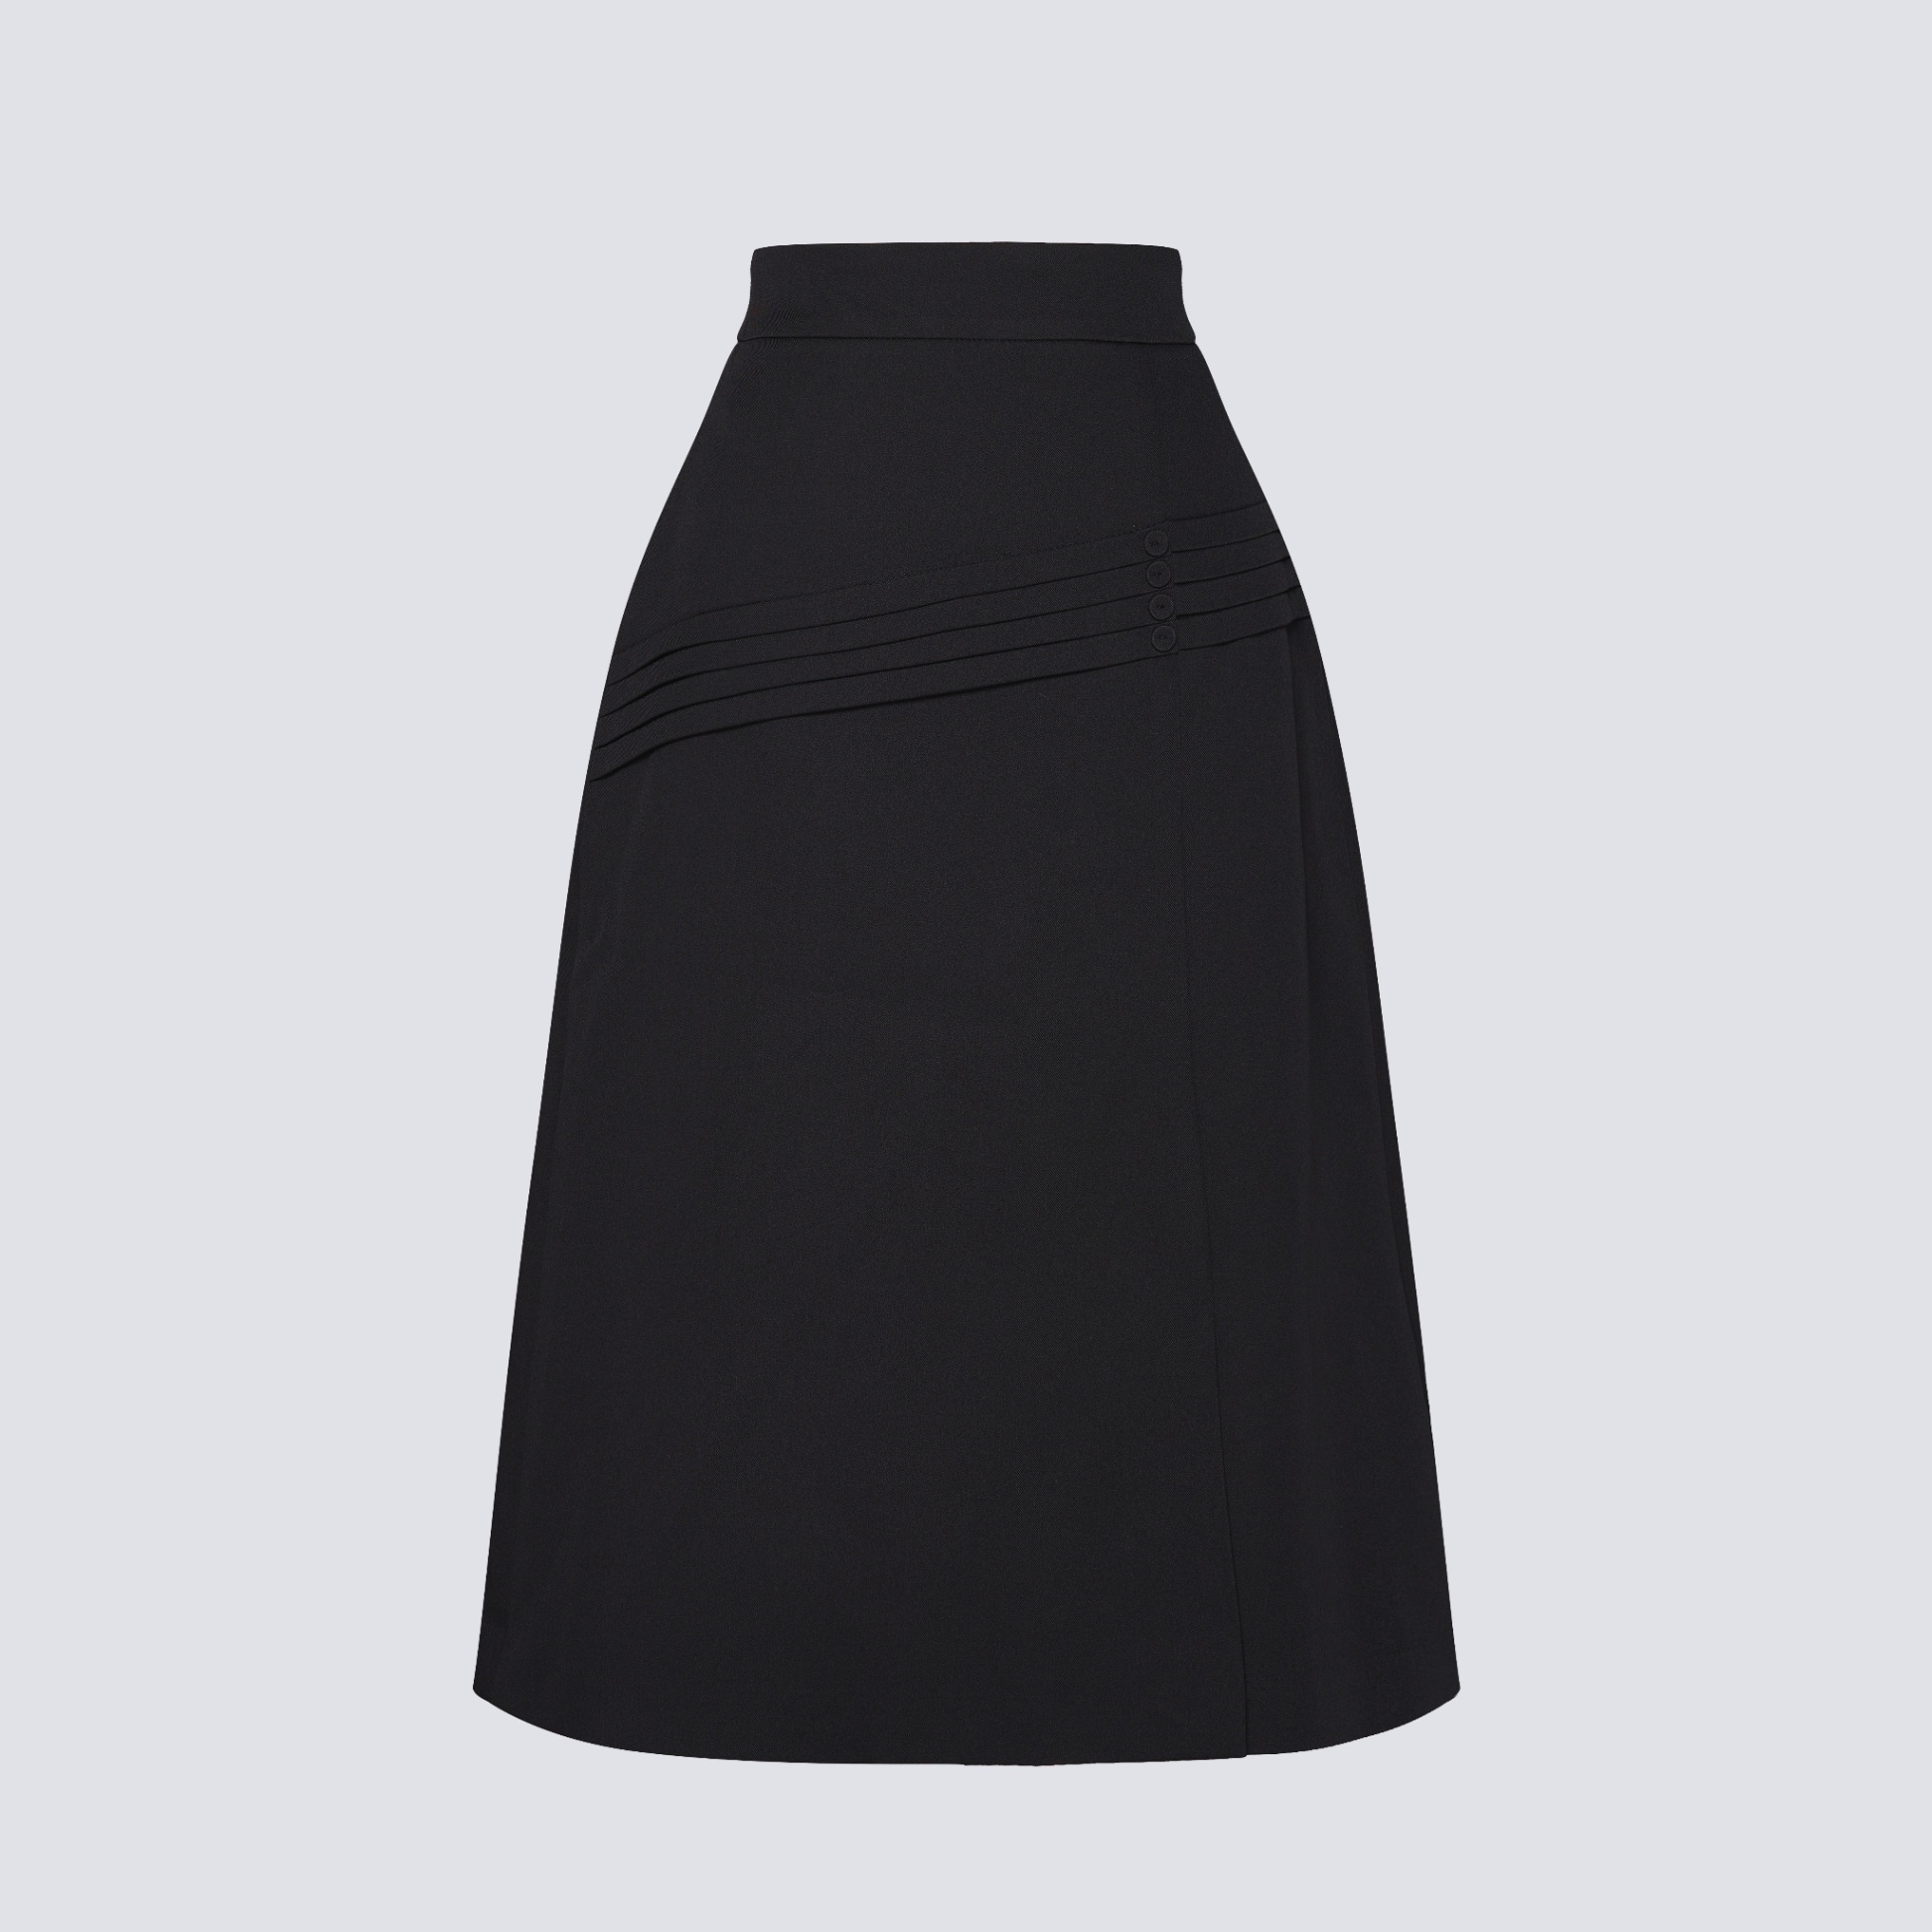 36532B62 - Chân váy đen giả da, dáng A tà bong túi ốp (Limitted) Thời trang  nữ Toson